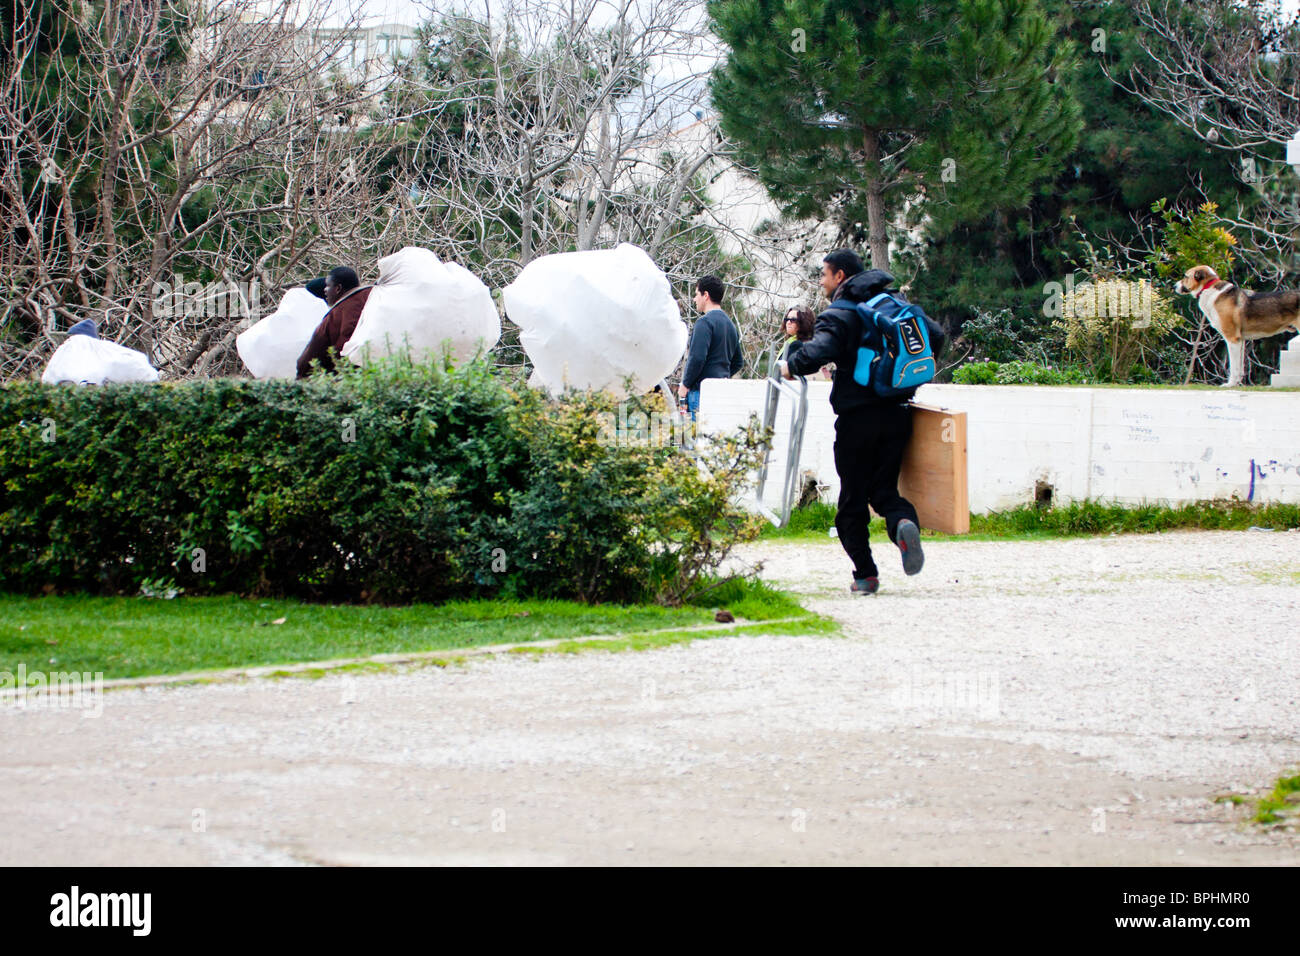 ATHENS, Grecia - 14 febbraio: gli immigrati la vendita di merci contraffatte in esecuzione dalla polizia nel centro il 14 febbraio 2010. Foto Stock